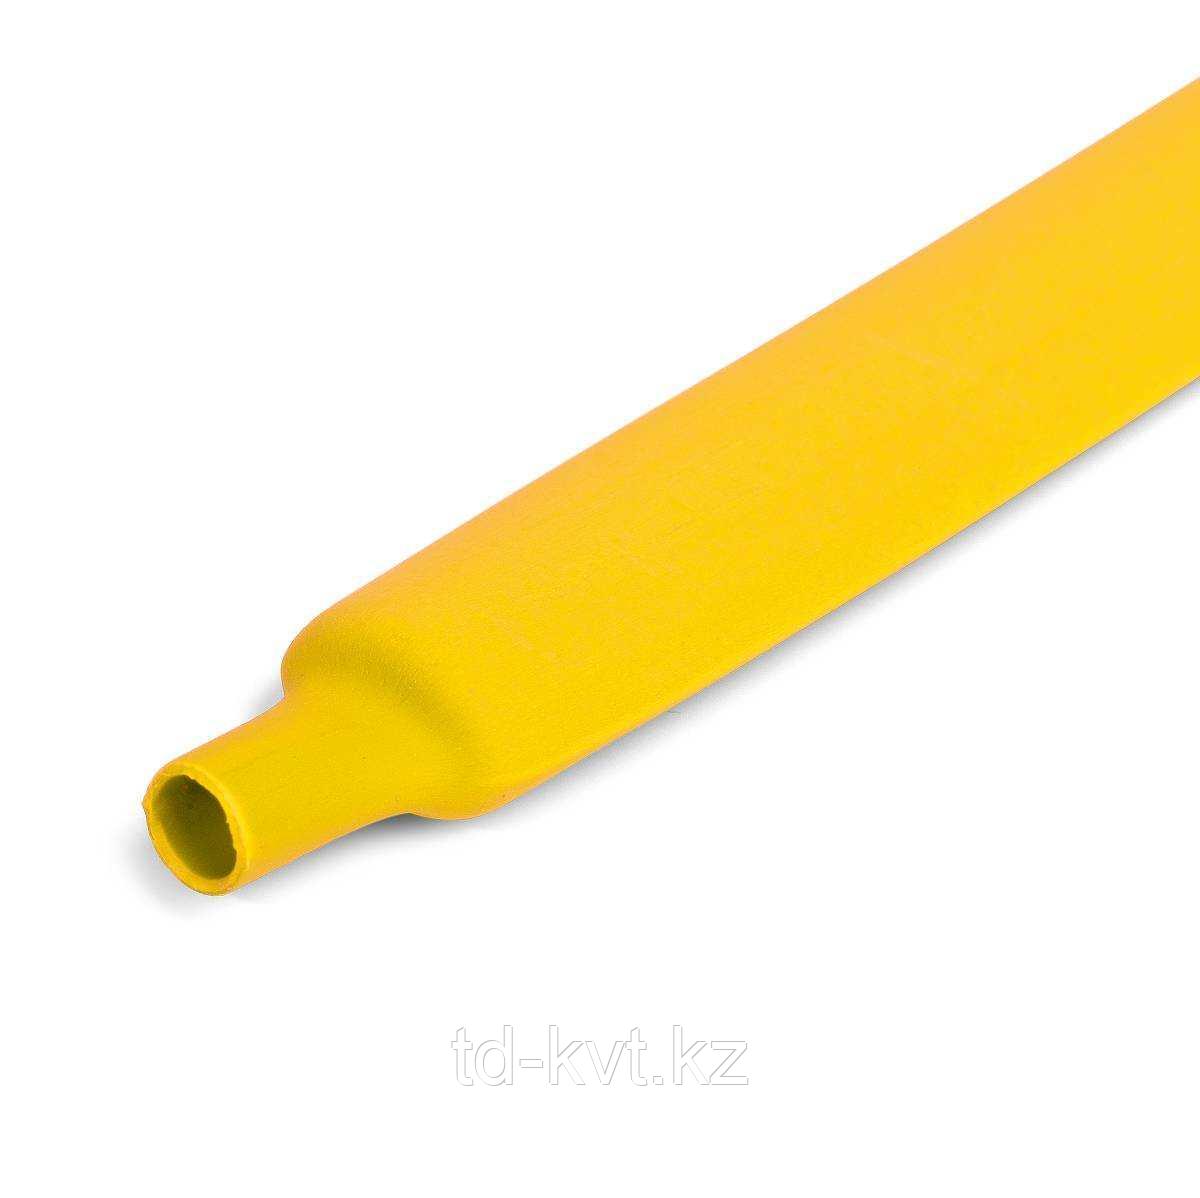 Цветная термоусадочная трубка с коэффициентом усадки 2:1 ТУТнг-6/3, желт